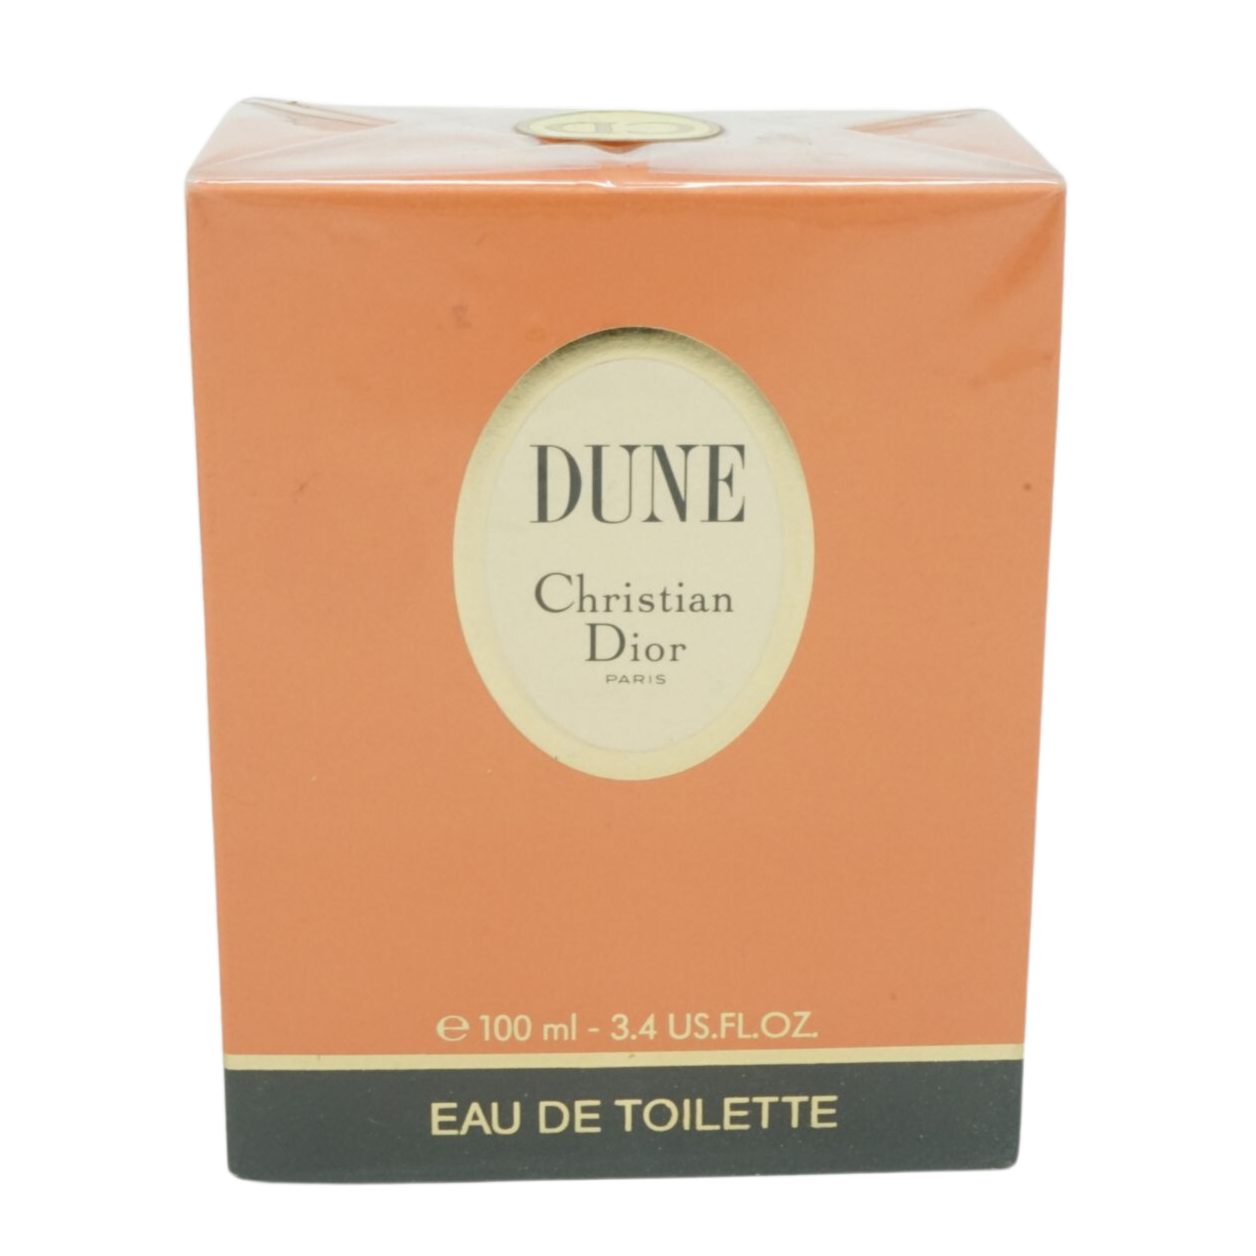 Dior Eau Dior 100ml Toilette Dune Christian Selbstbräunungstücher de